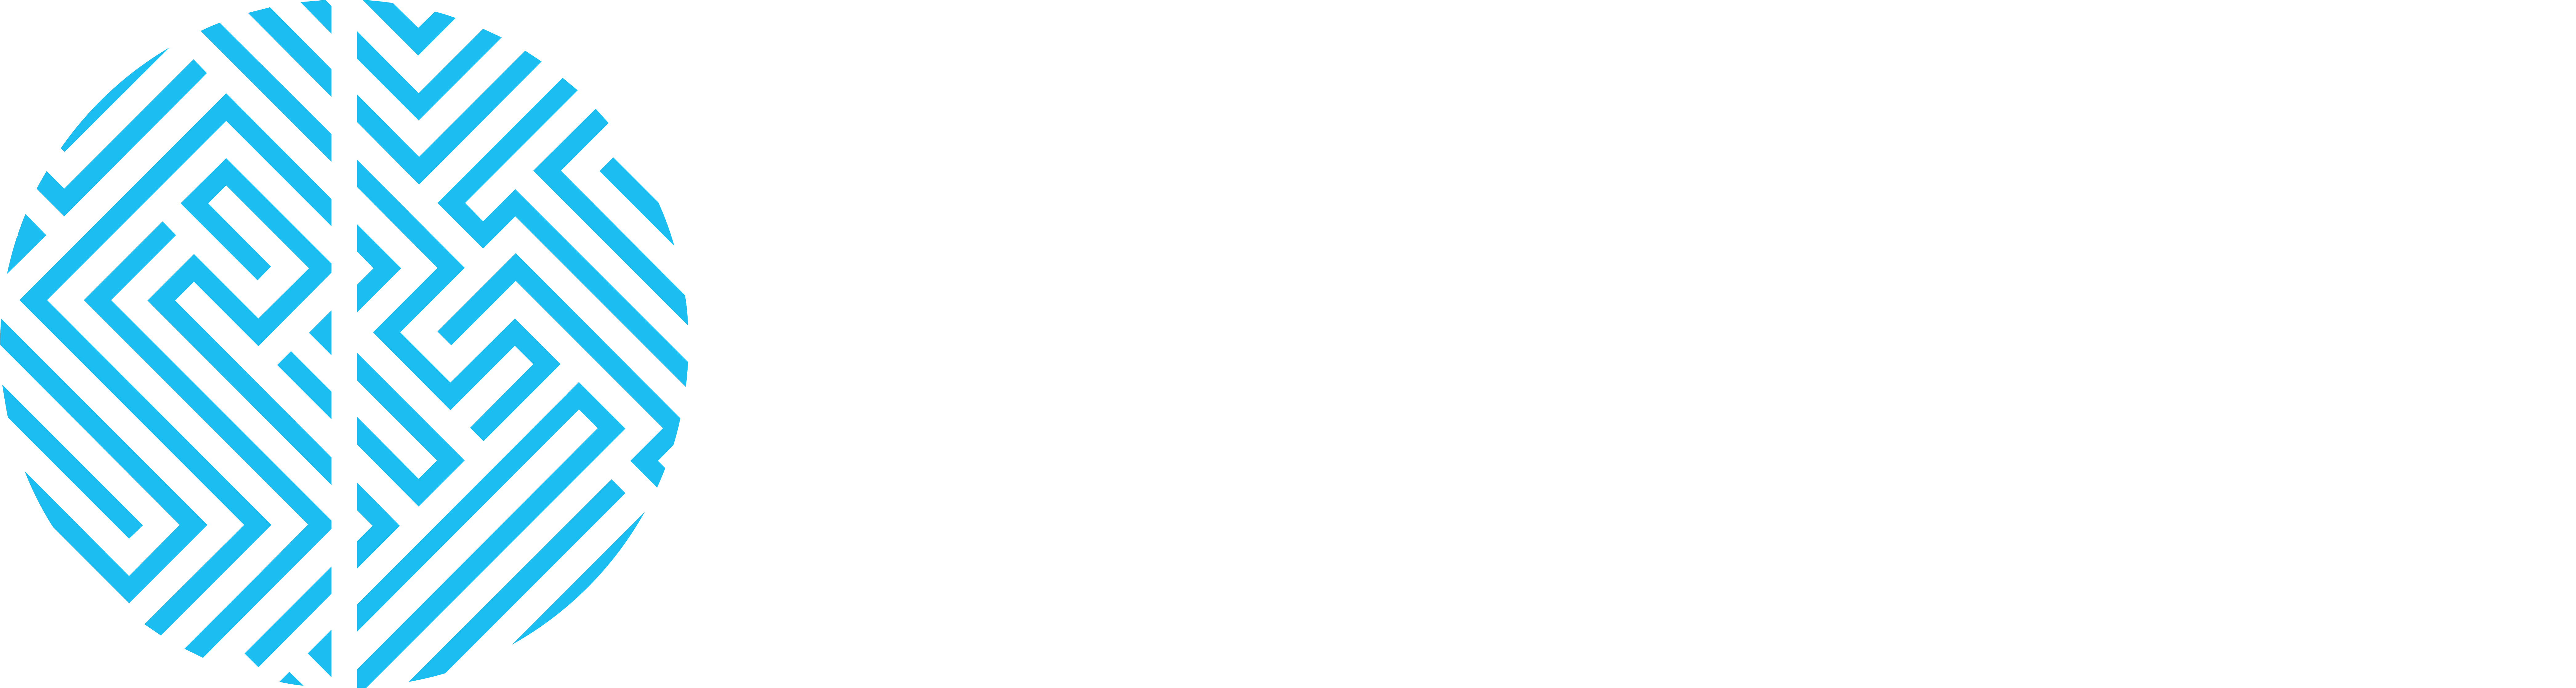 Center for BrainHealth logo.